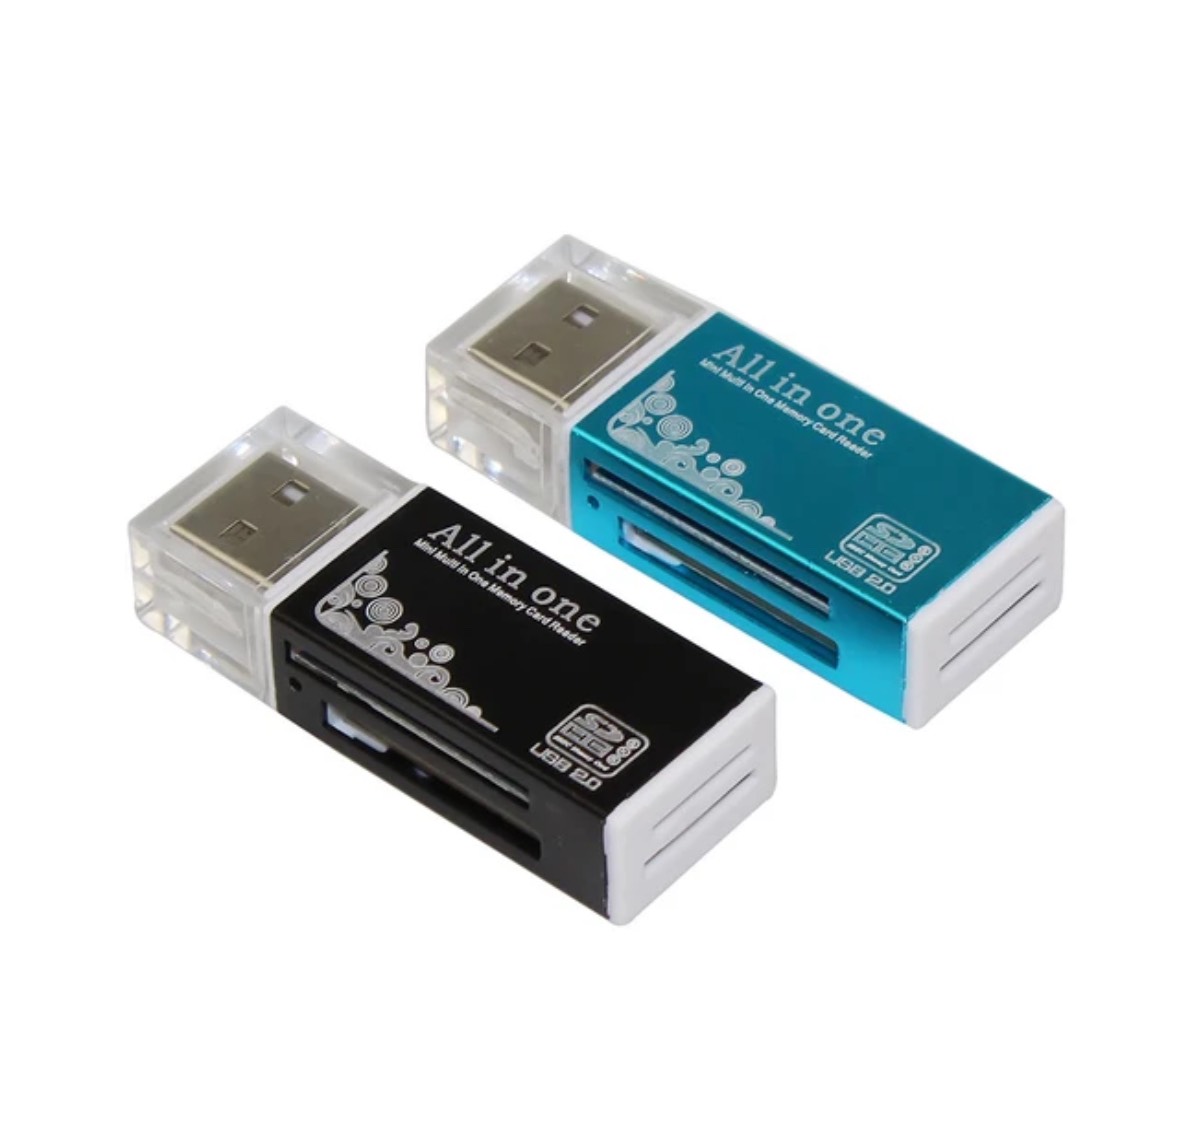 Đầu đọc thẻ nhớ đa năng 15 in 1 USB 2.0 tất cả trong 1 cho Micro SD SDHC TF M2 MMC MS MS Pro-OTG 26